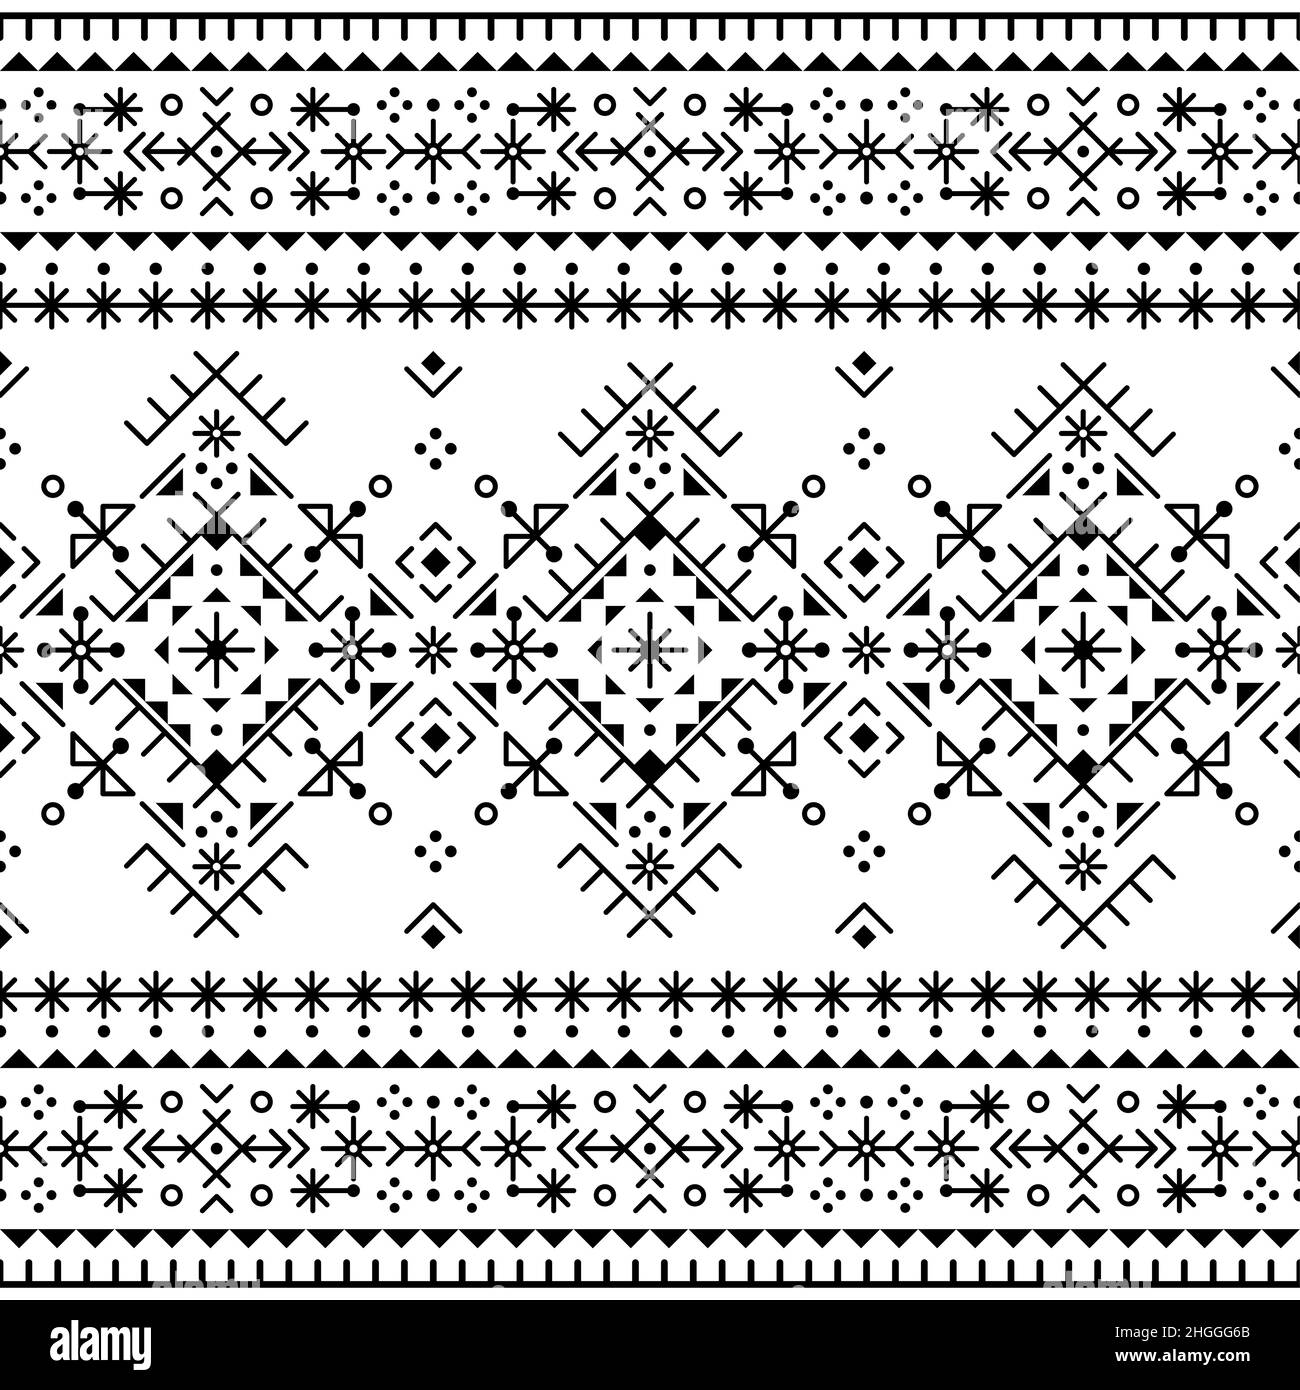 Geometrisches Tribal- oder Neotribal-Line-Art-Vektor-nahtloses Muster, Textil- oder Stoffdruck-Design, inspiriert von der alten isländischen nordischen Wikinger-Runenkunst Stock Vektor